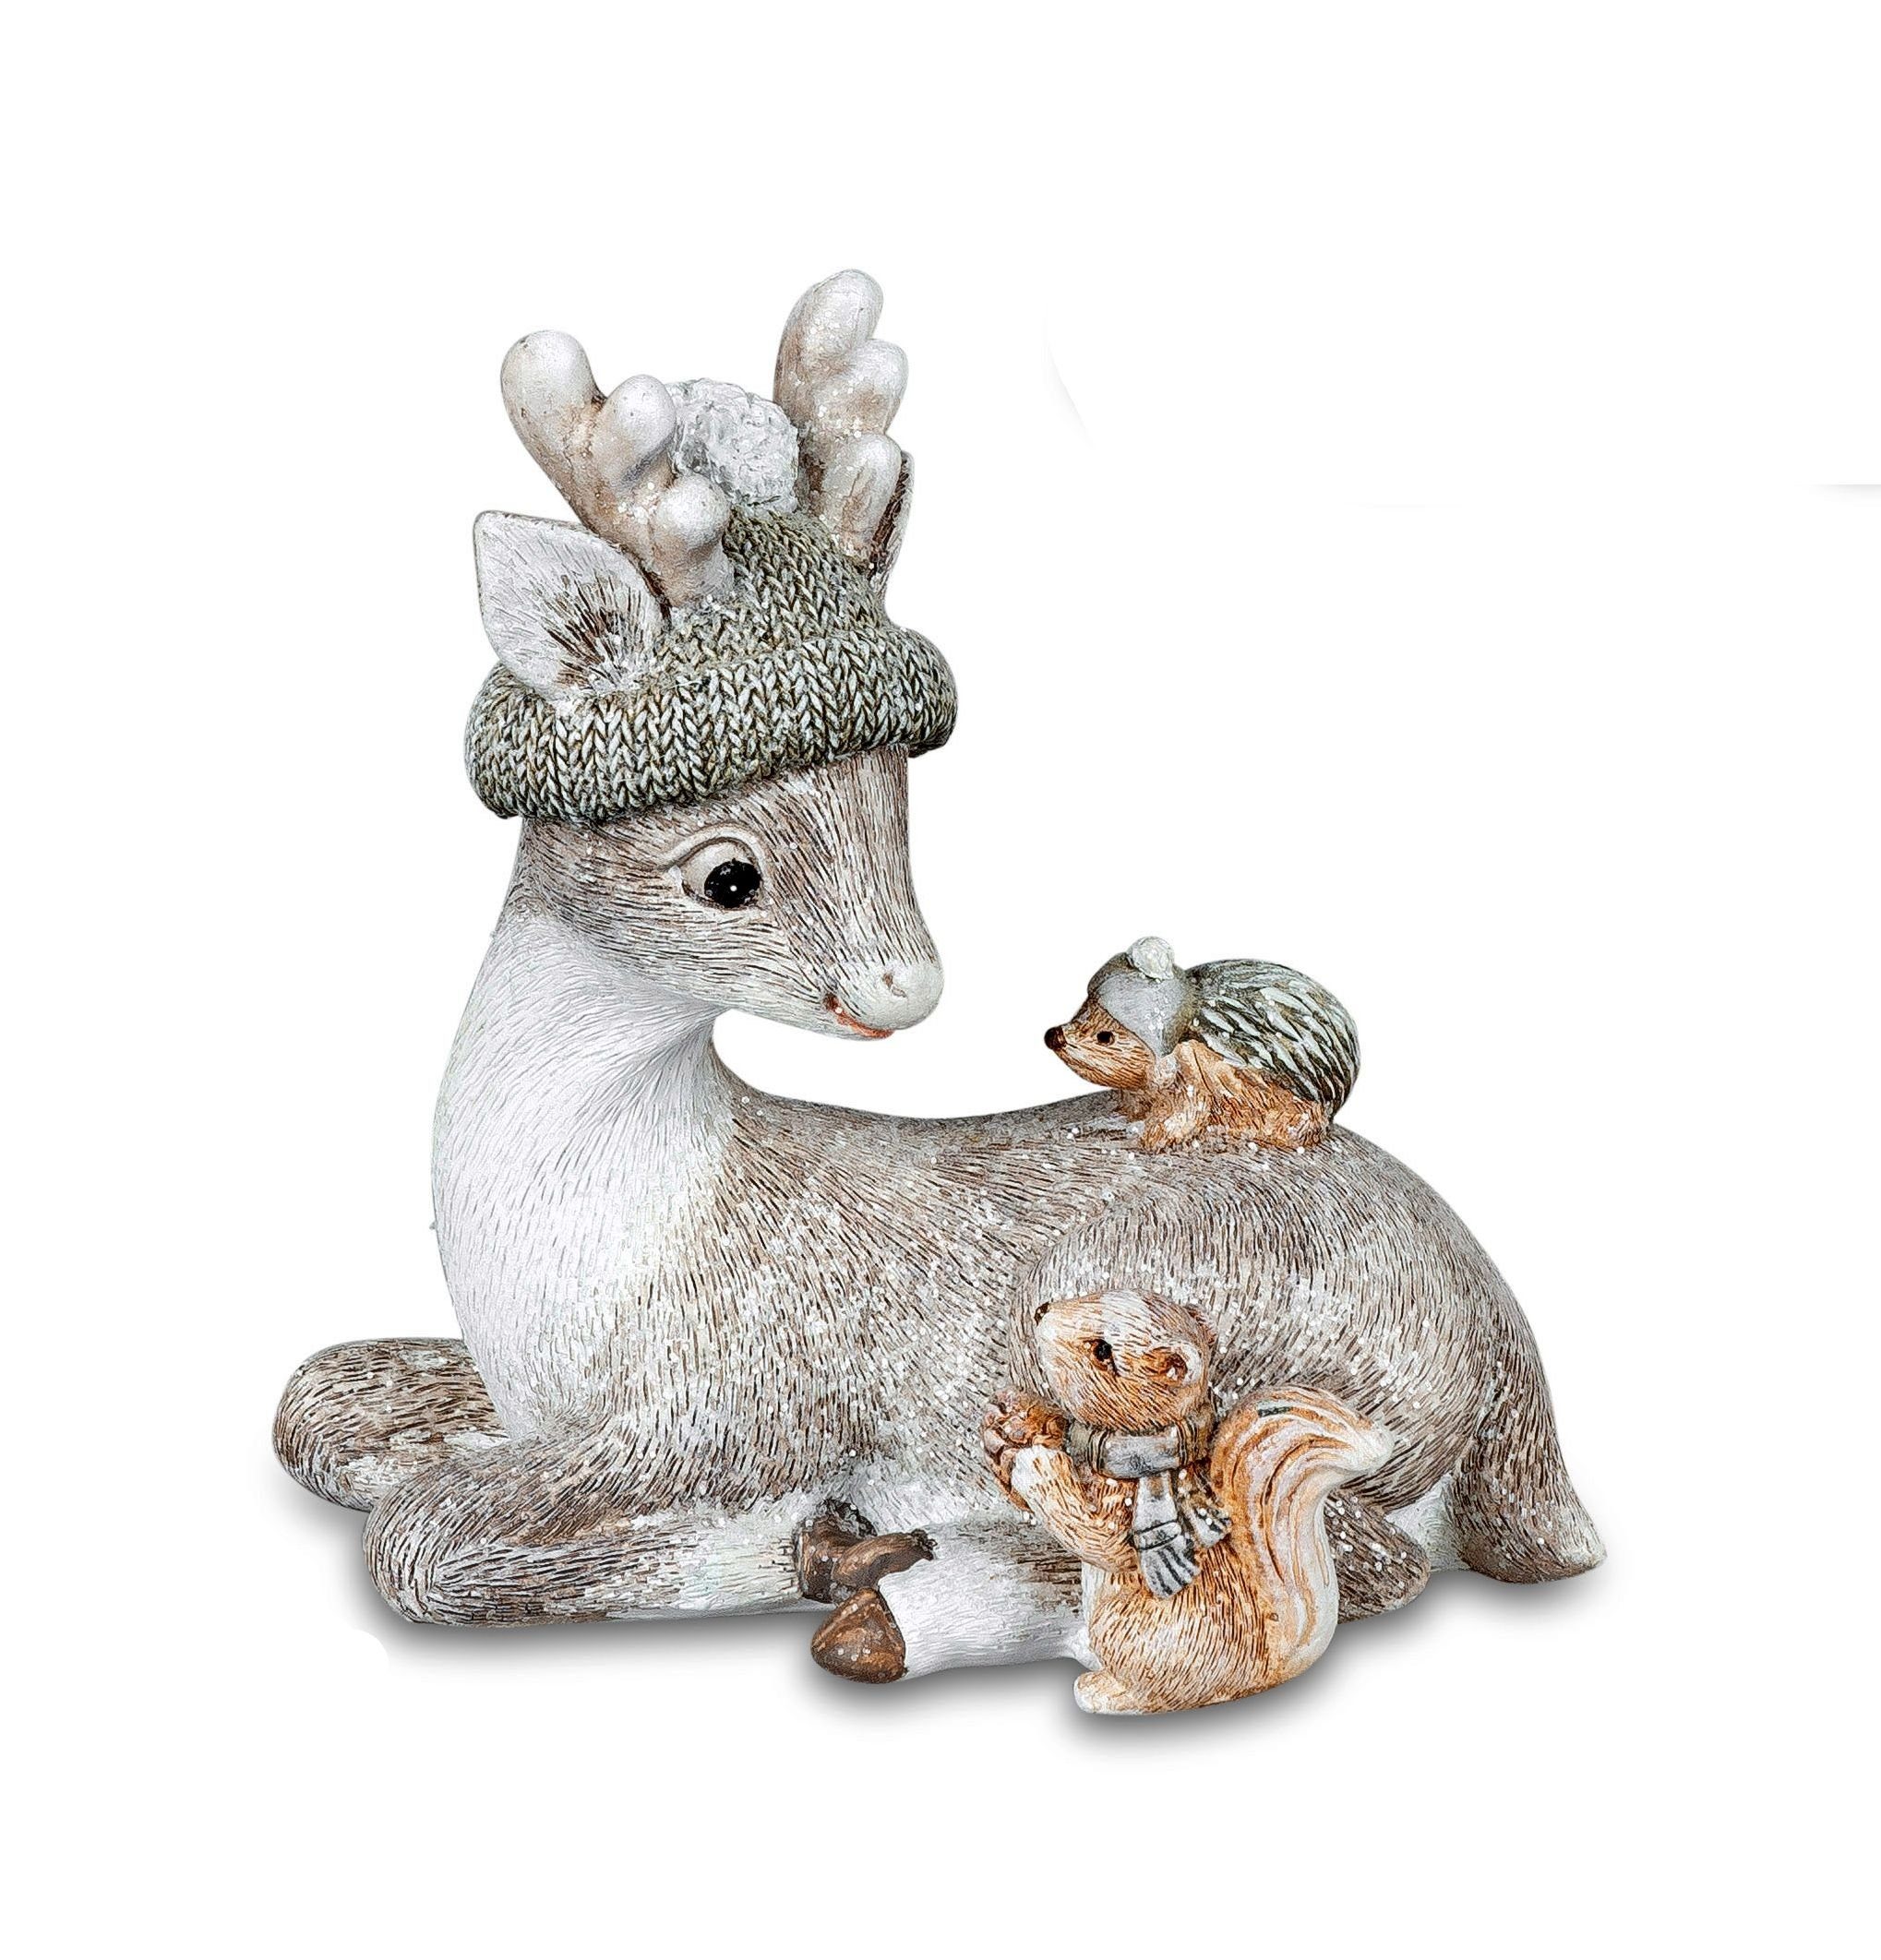 Small-Preis Tierfigur Nostalgische Winterfiguren in verschiedenen Größen Motiven und